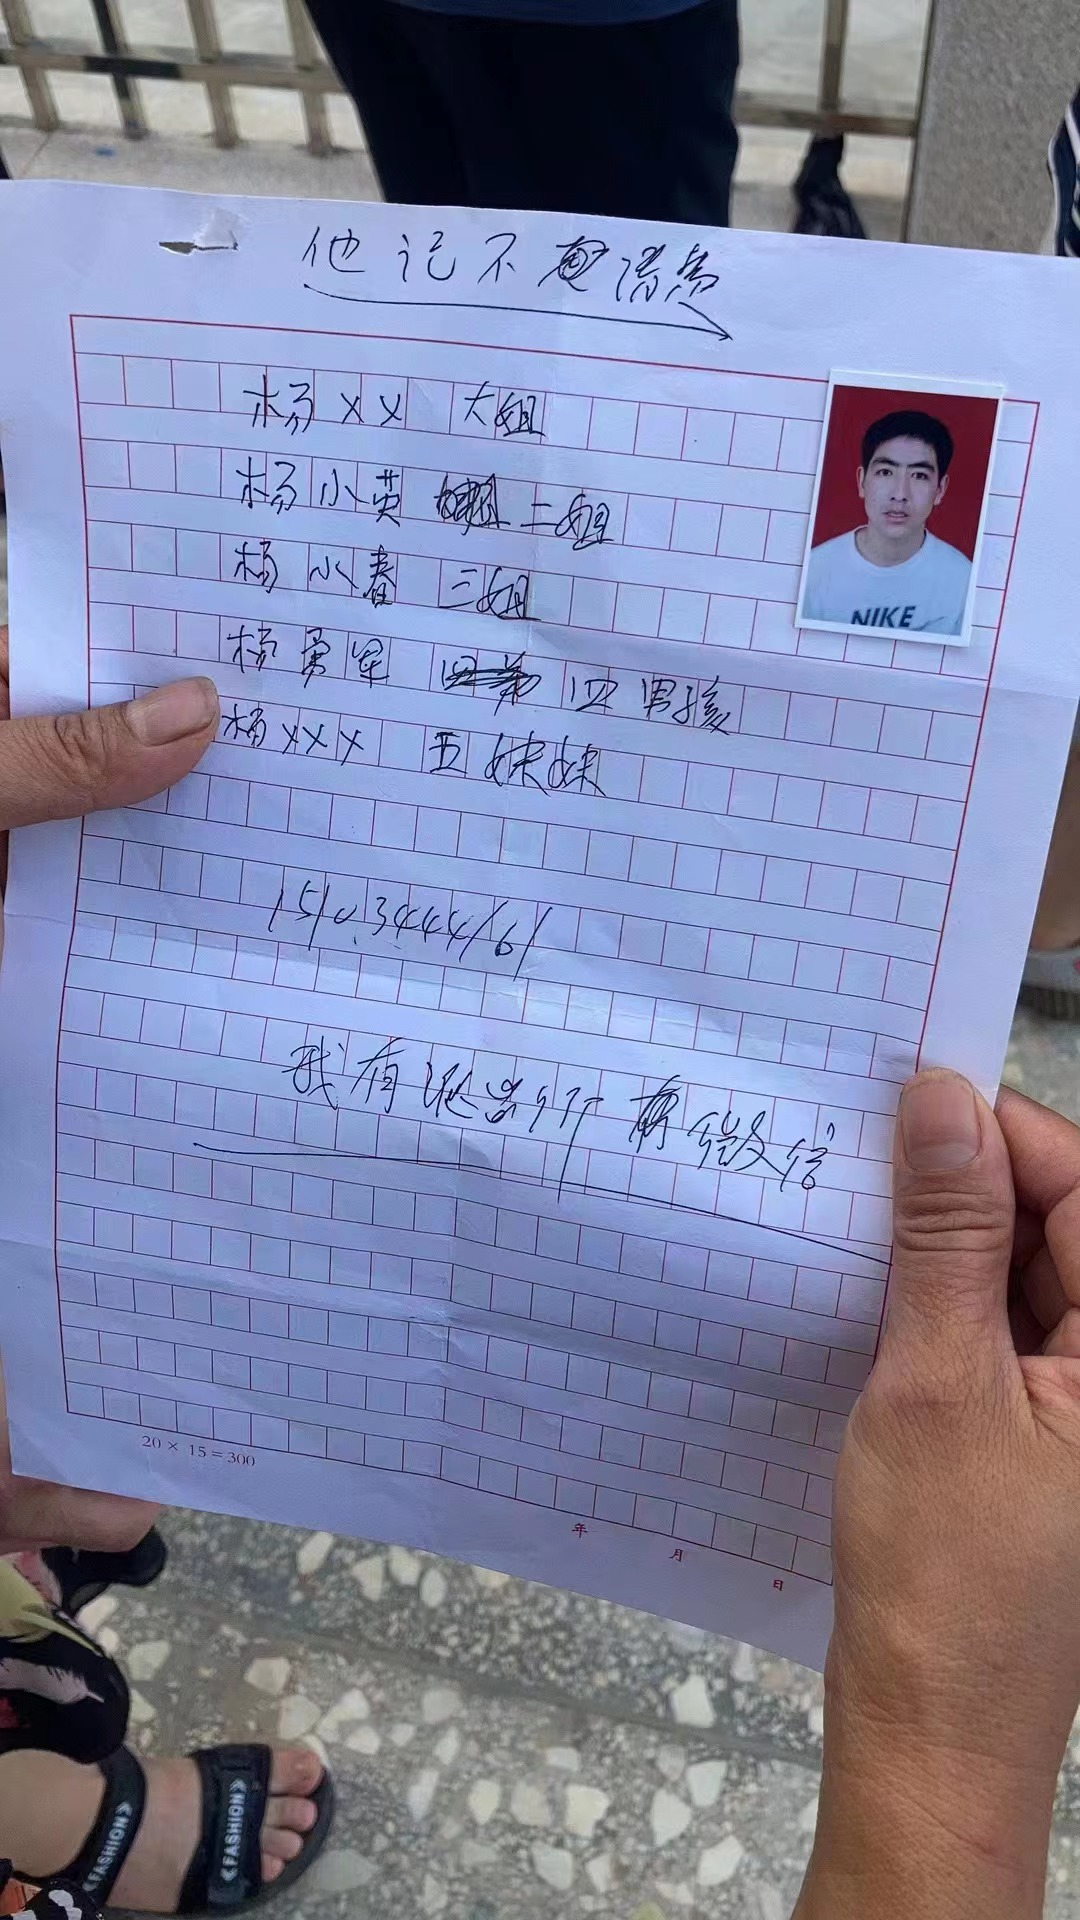 图为杨勇军向警察提供的家人信息